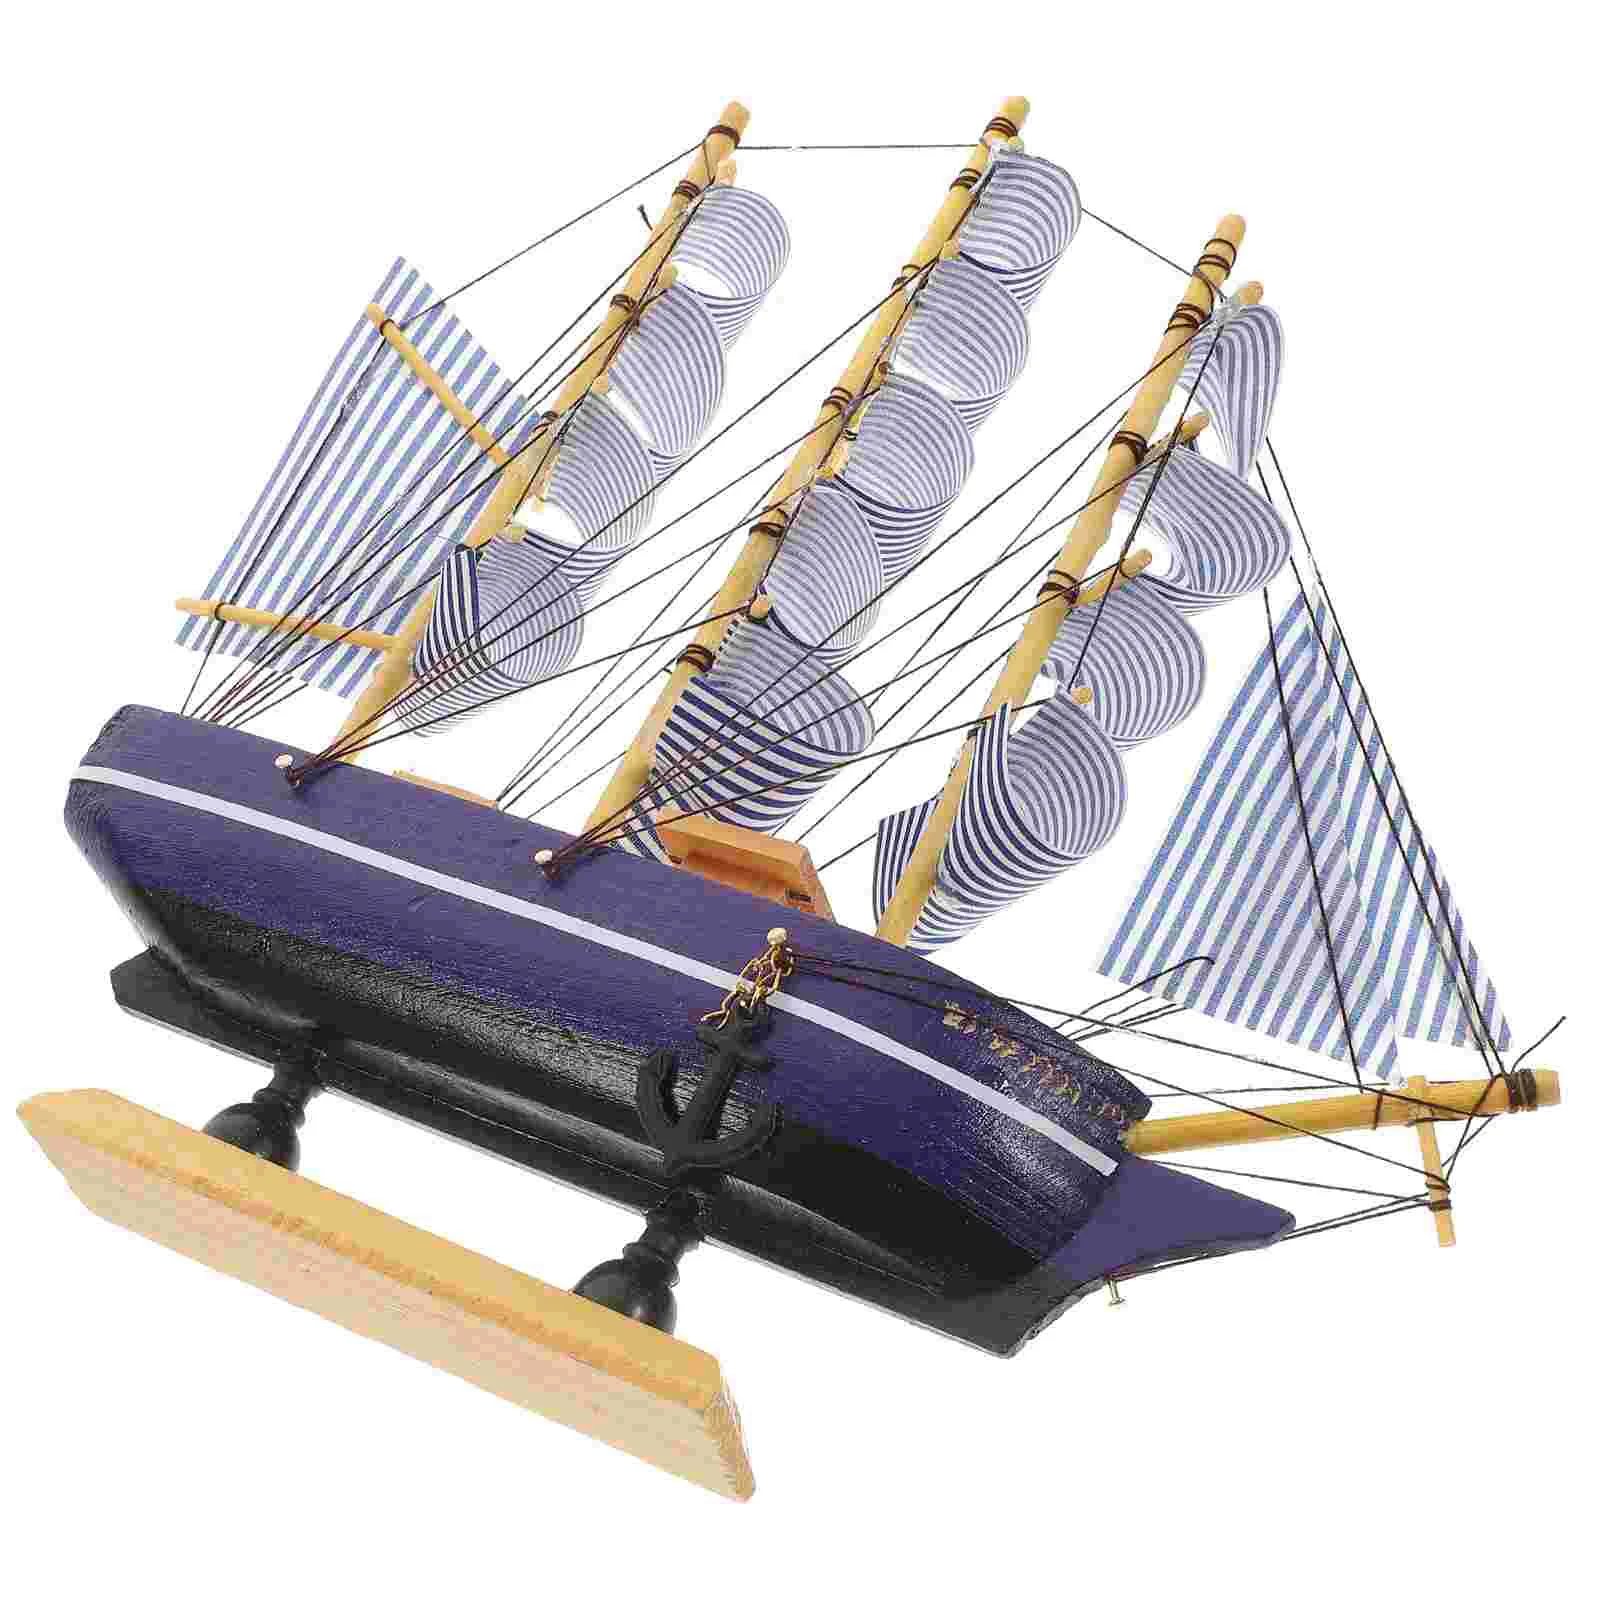 

Миниатюрная парусная лодка, деревянные игрушки, 3d пазлы, модель корабля в средиземноморском стиле, Декор, деревенский парусник, украшение д...